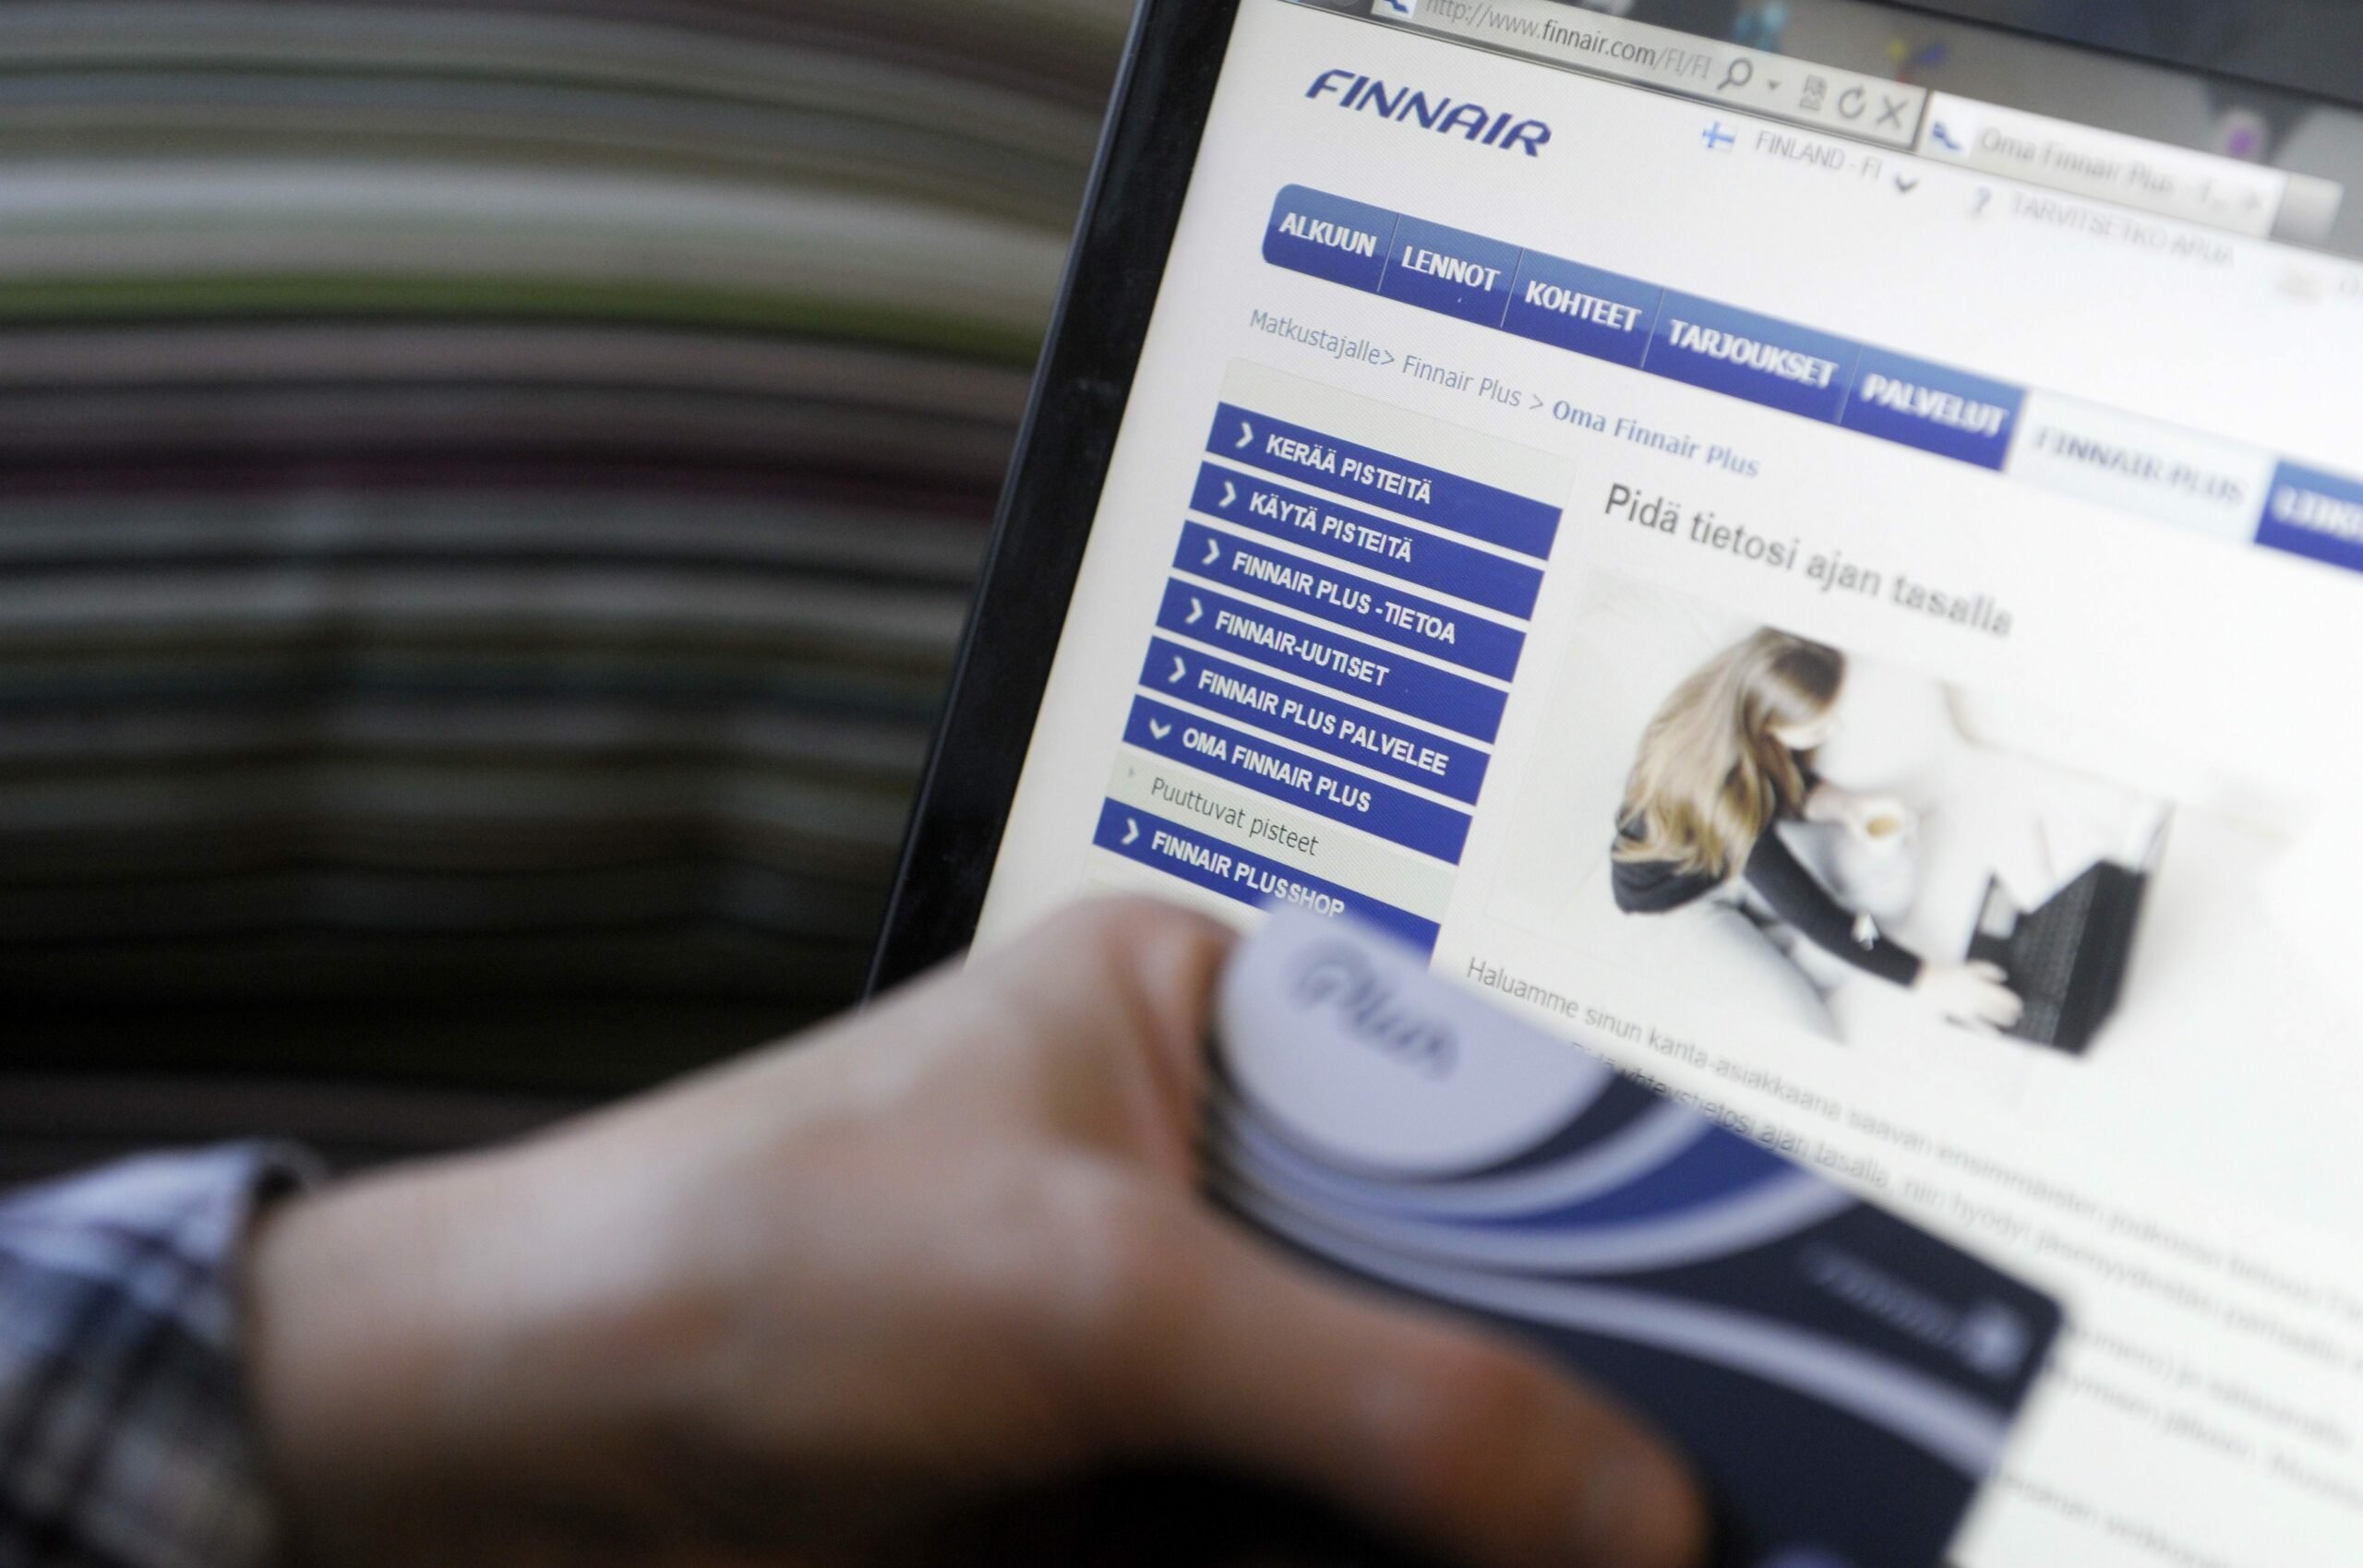 Finnair ulkoisti asiakaspalvelun tekoälylle, päätöstä perustellaan  kannattavuudella | Verkkouutiset